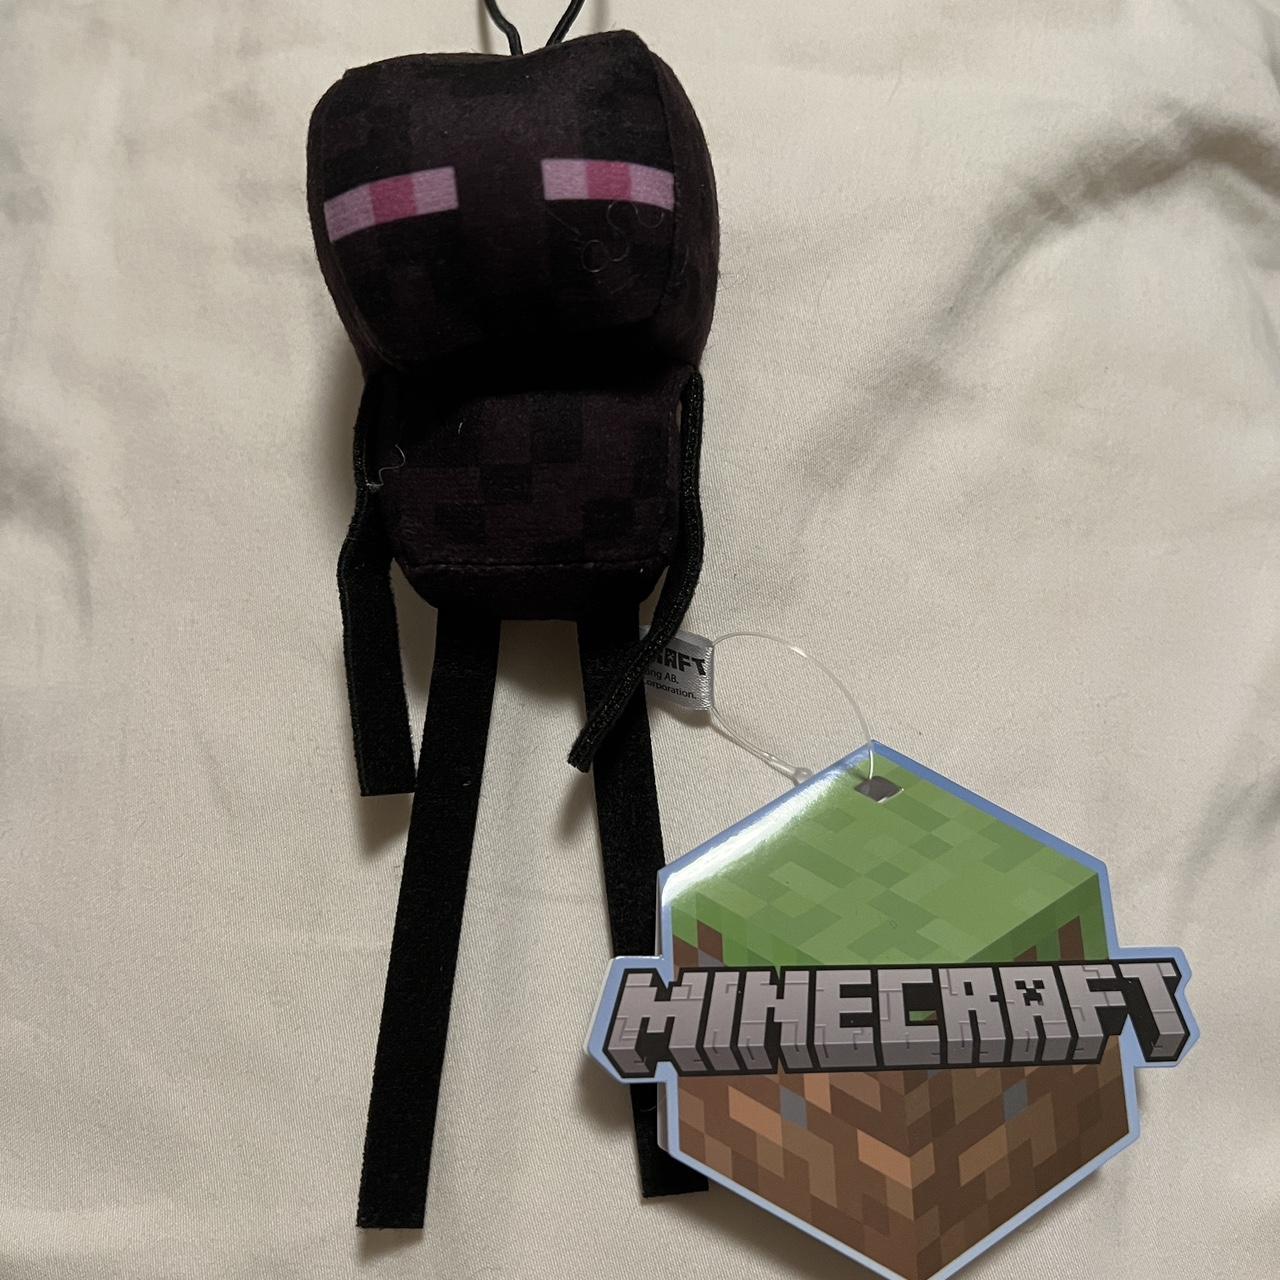 Minecraft Enderman (15cm) - Sent from Hong Kong -... - Depop